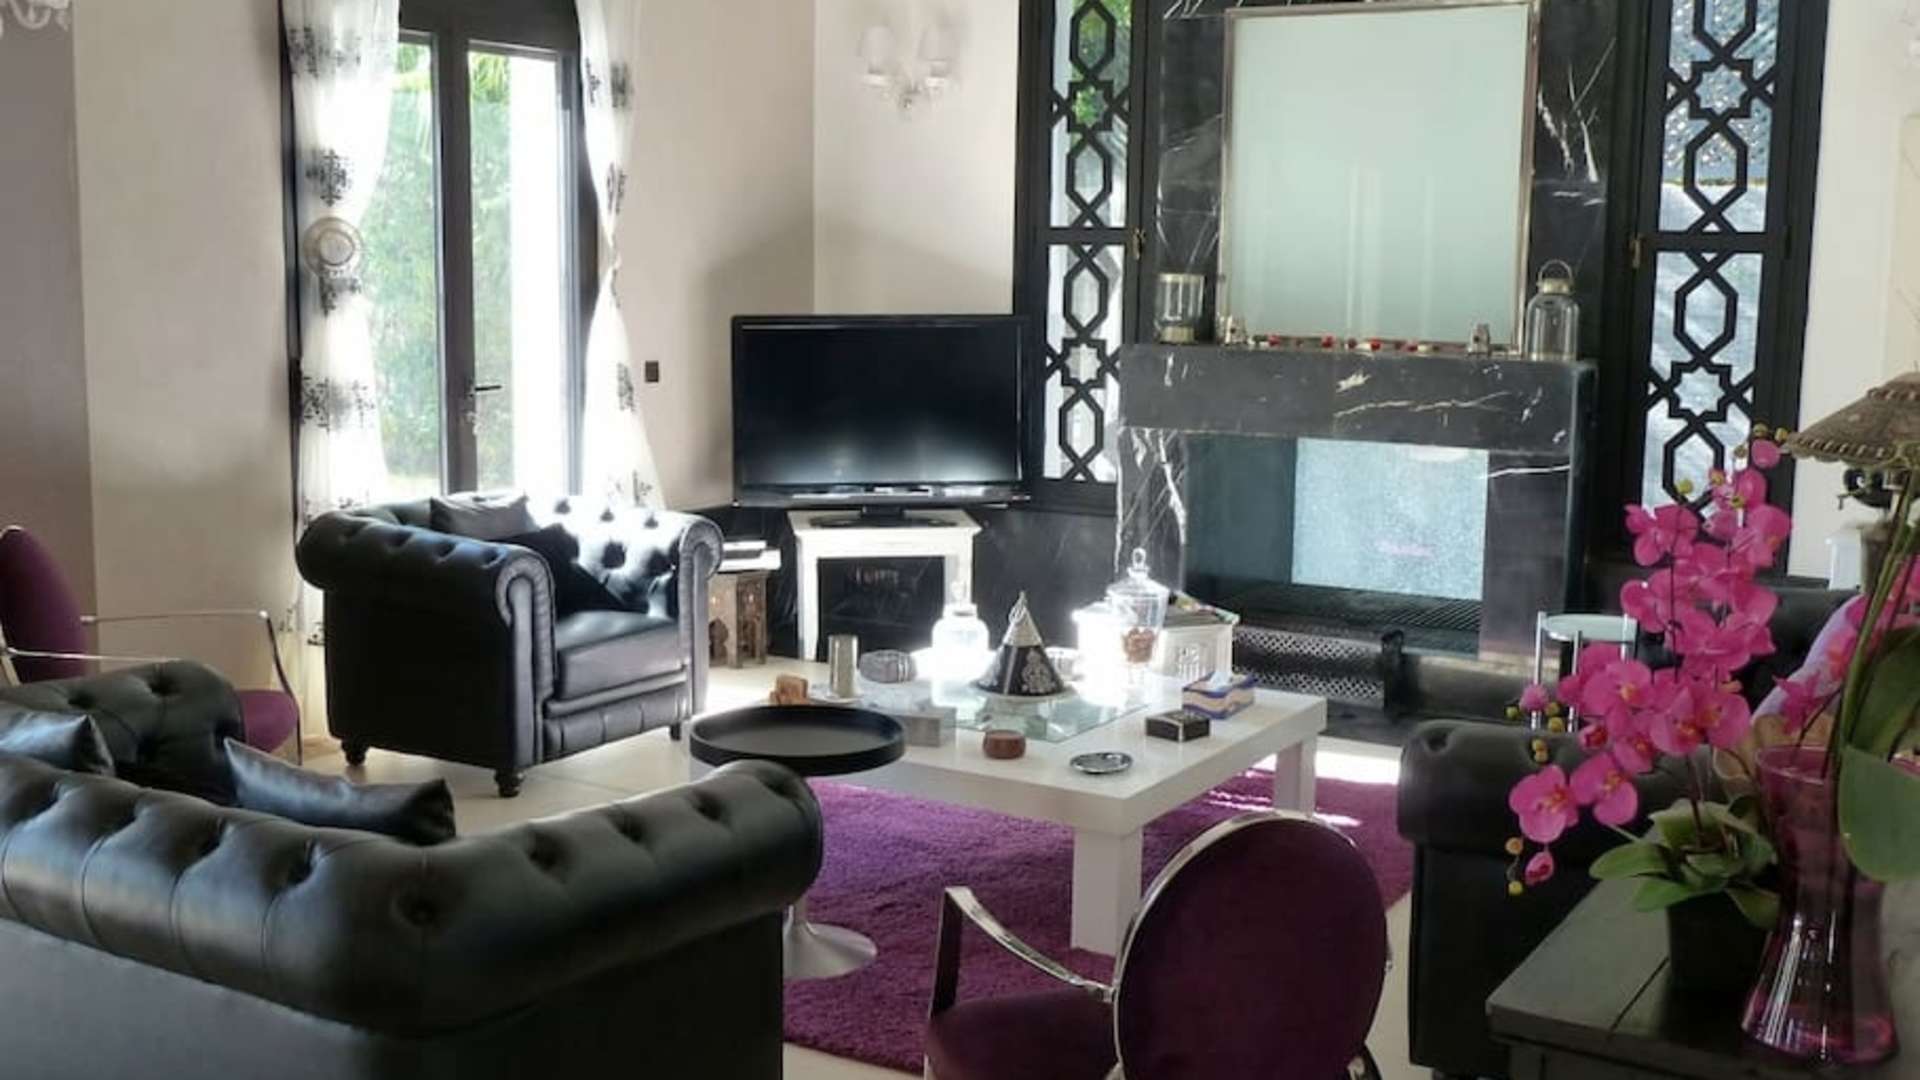 Location de vacances,Villa,Villa 5 chambres dans le golf d' Amelkis - Piscine Privée à 10min du centre de Marrakech,Marrakech,Amelkis Golf Resort